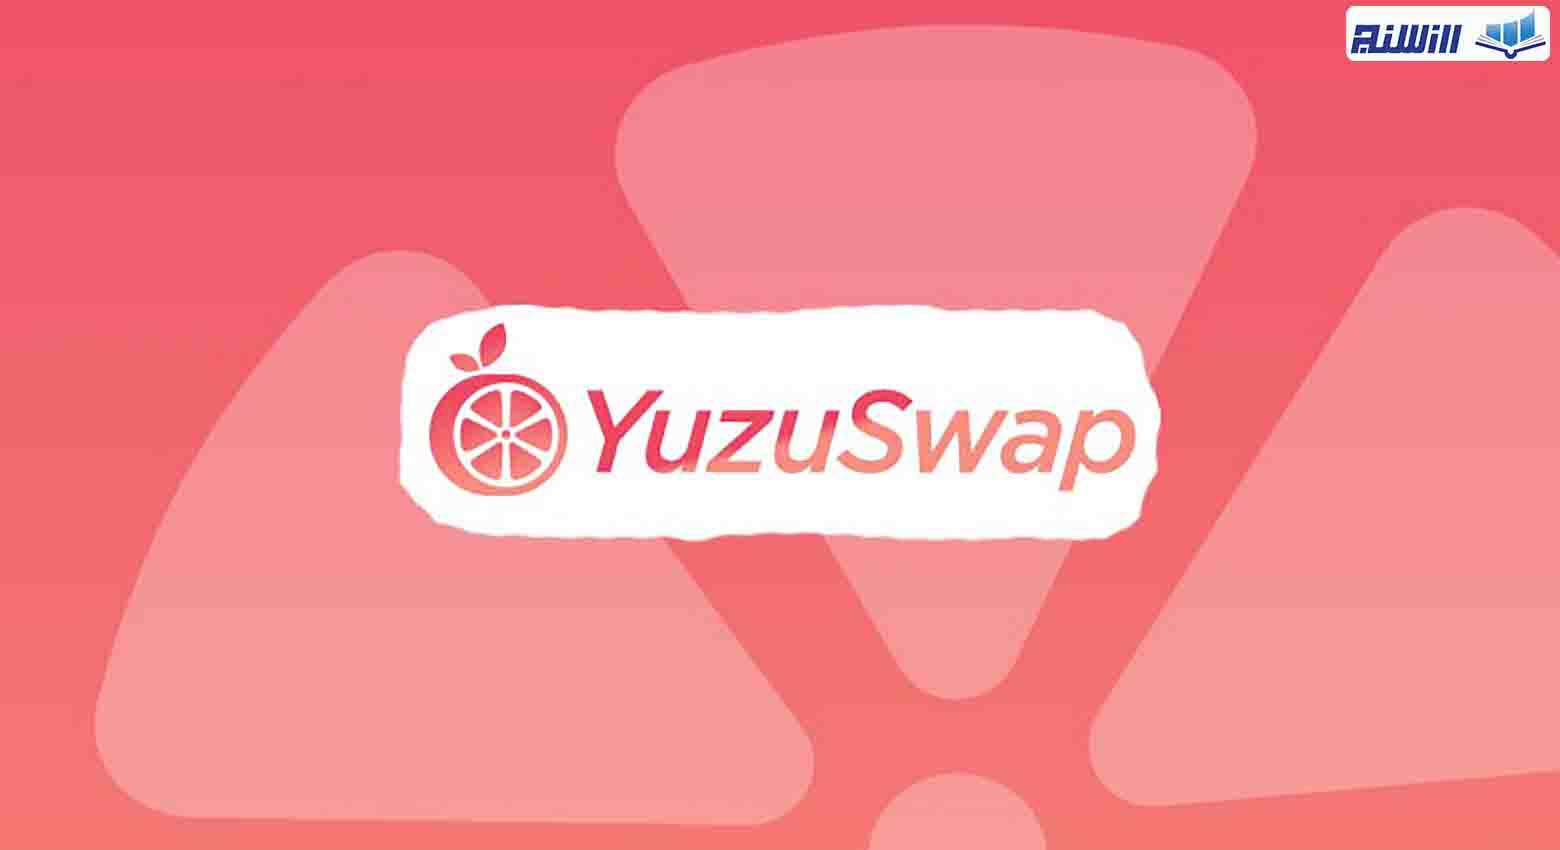 ویژگی های صرافی YuzuSwap چیست؟